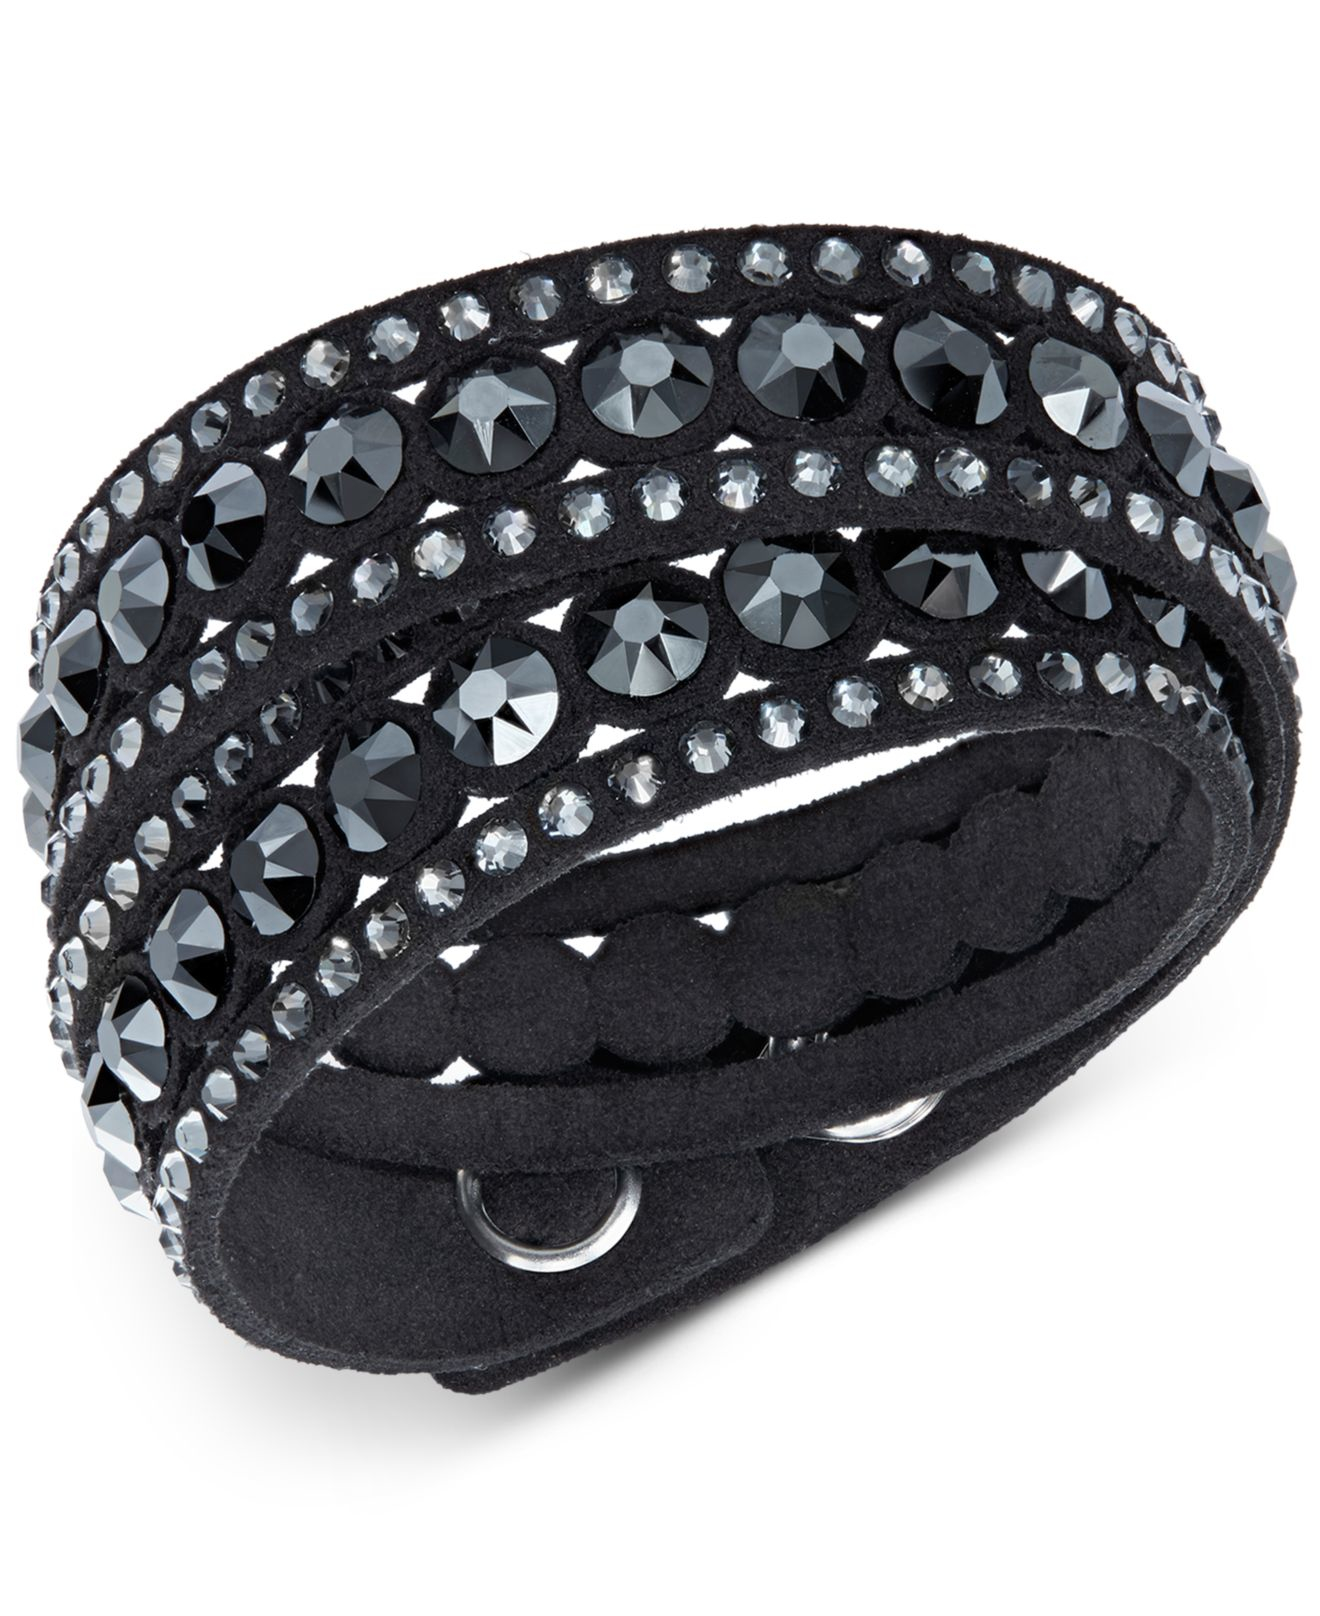 Swarovski Crystal Slake Wrap Bracelet in Black - Lyst